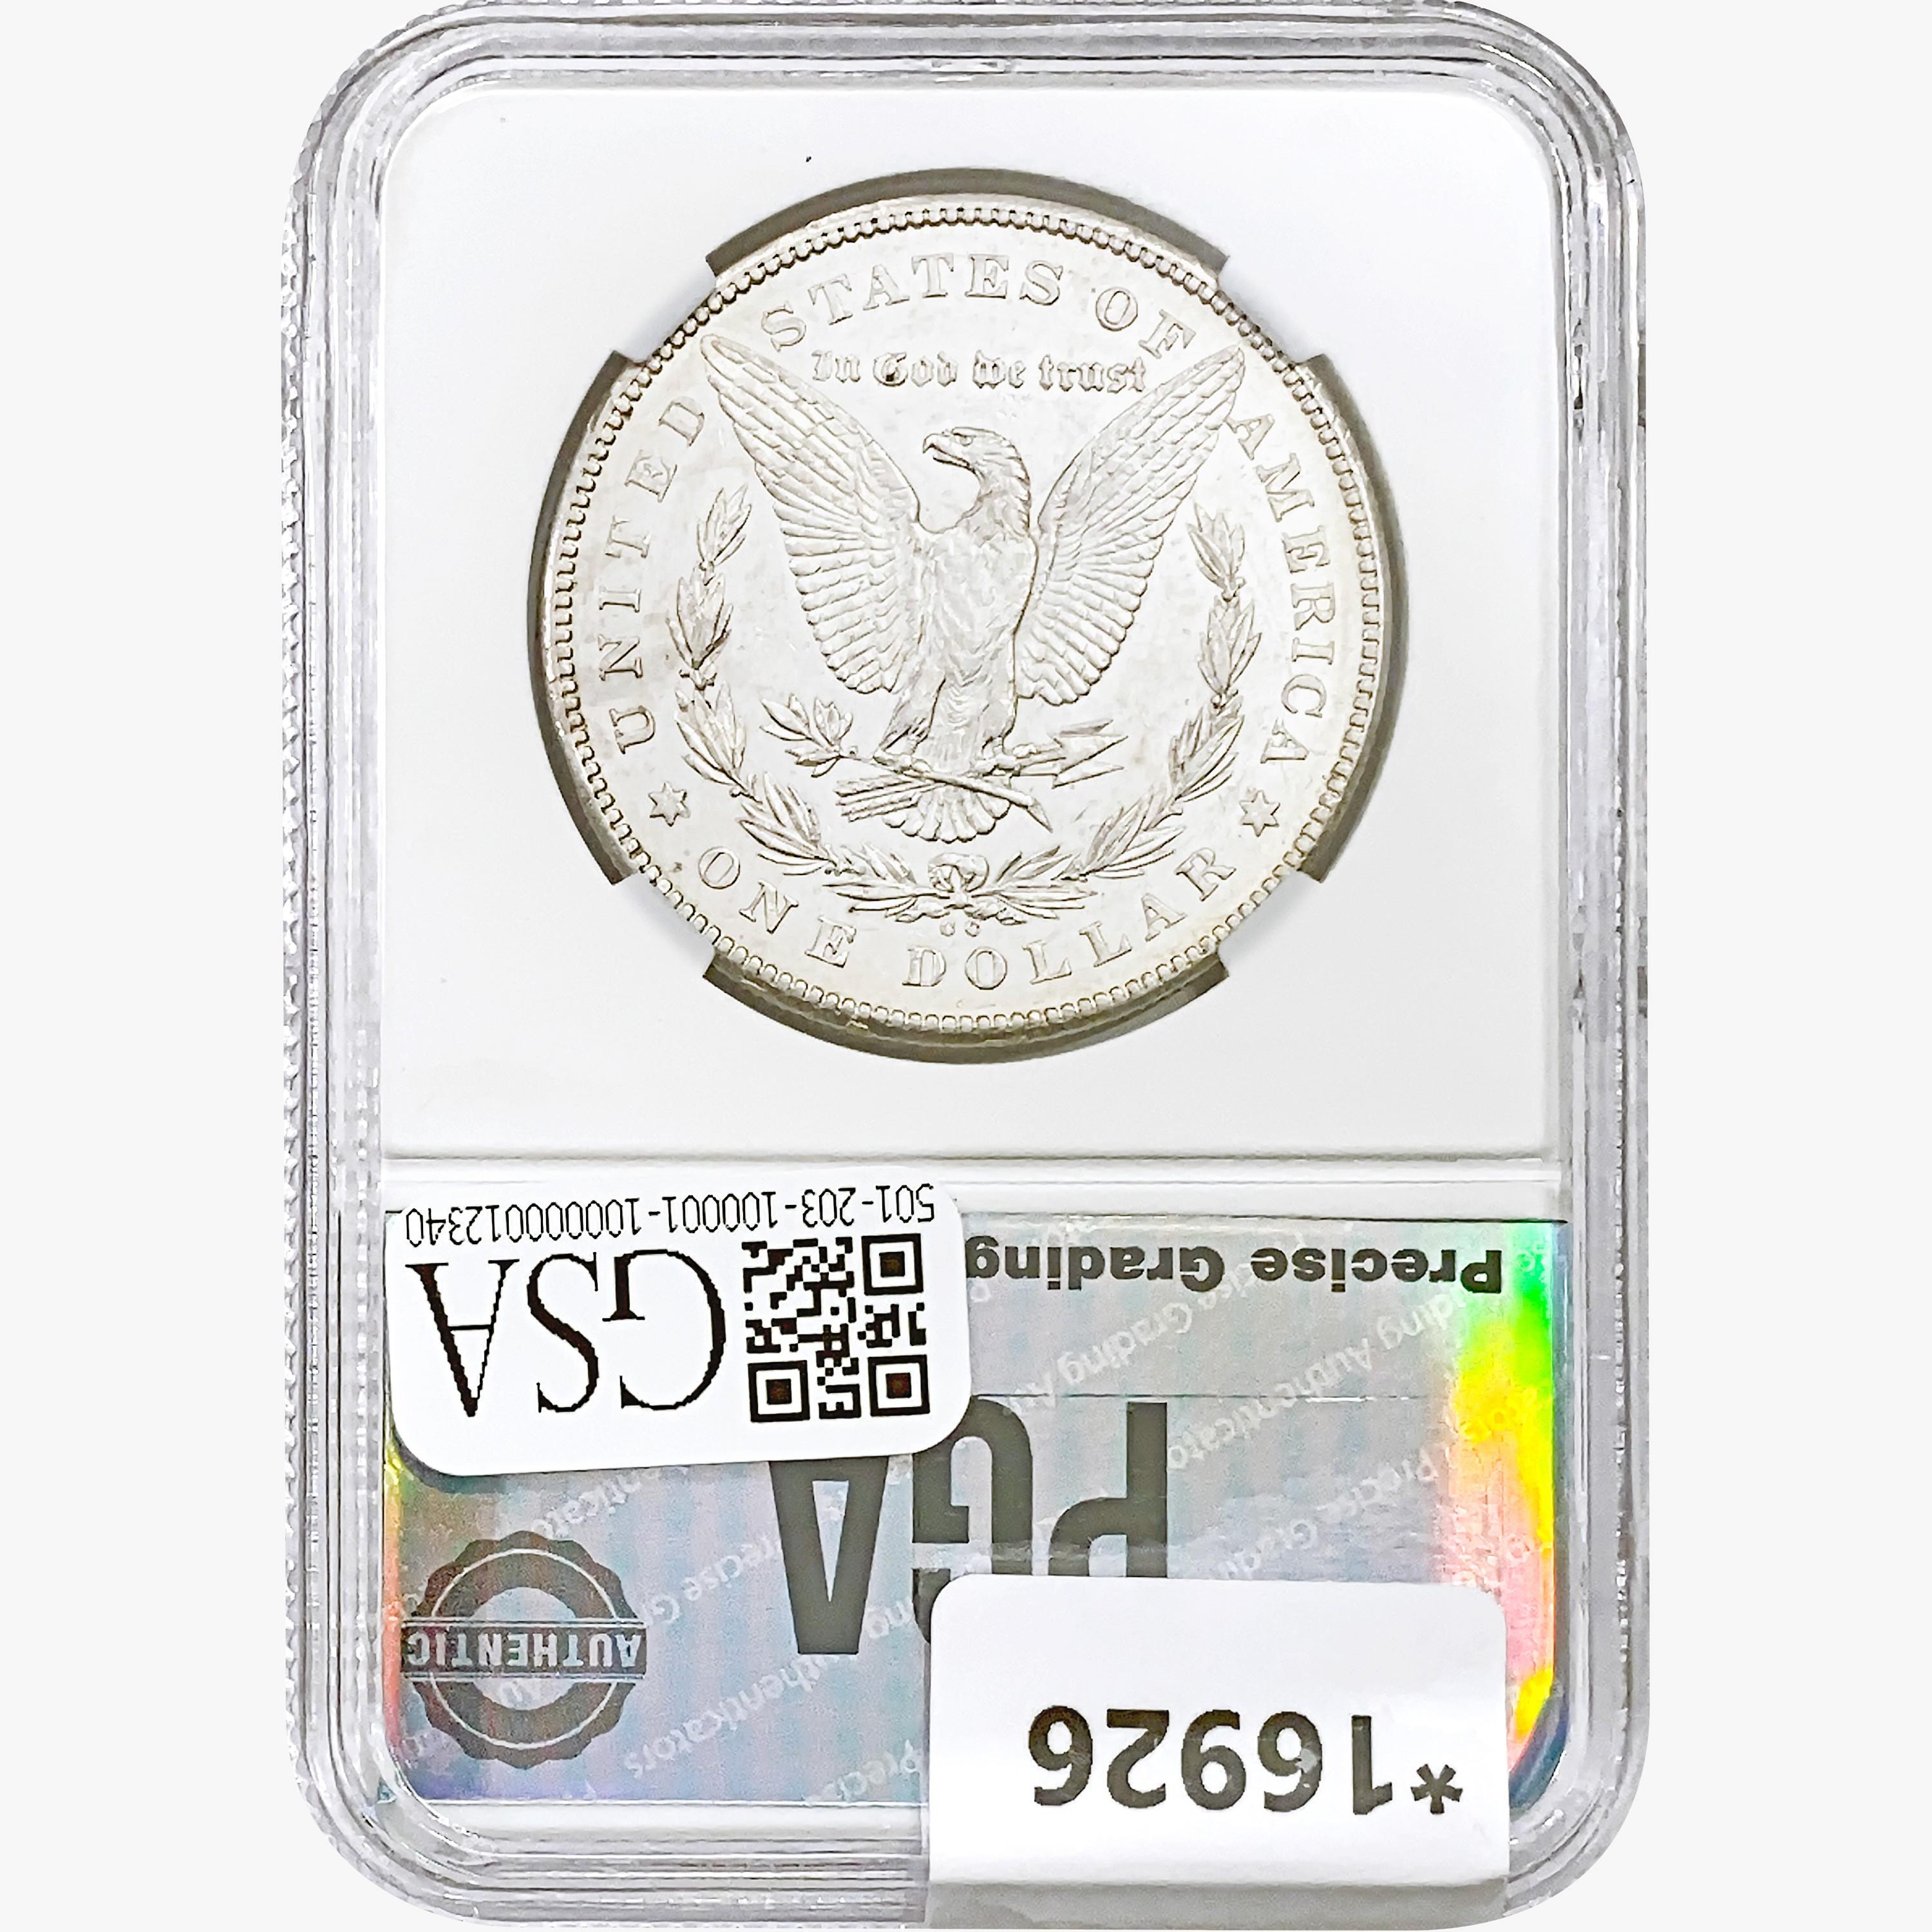 1878-CC Morgan Silver Dollar PGA MS63